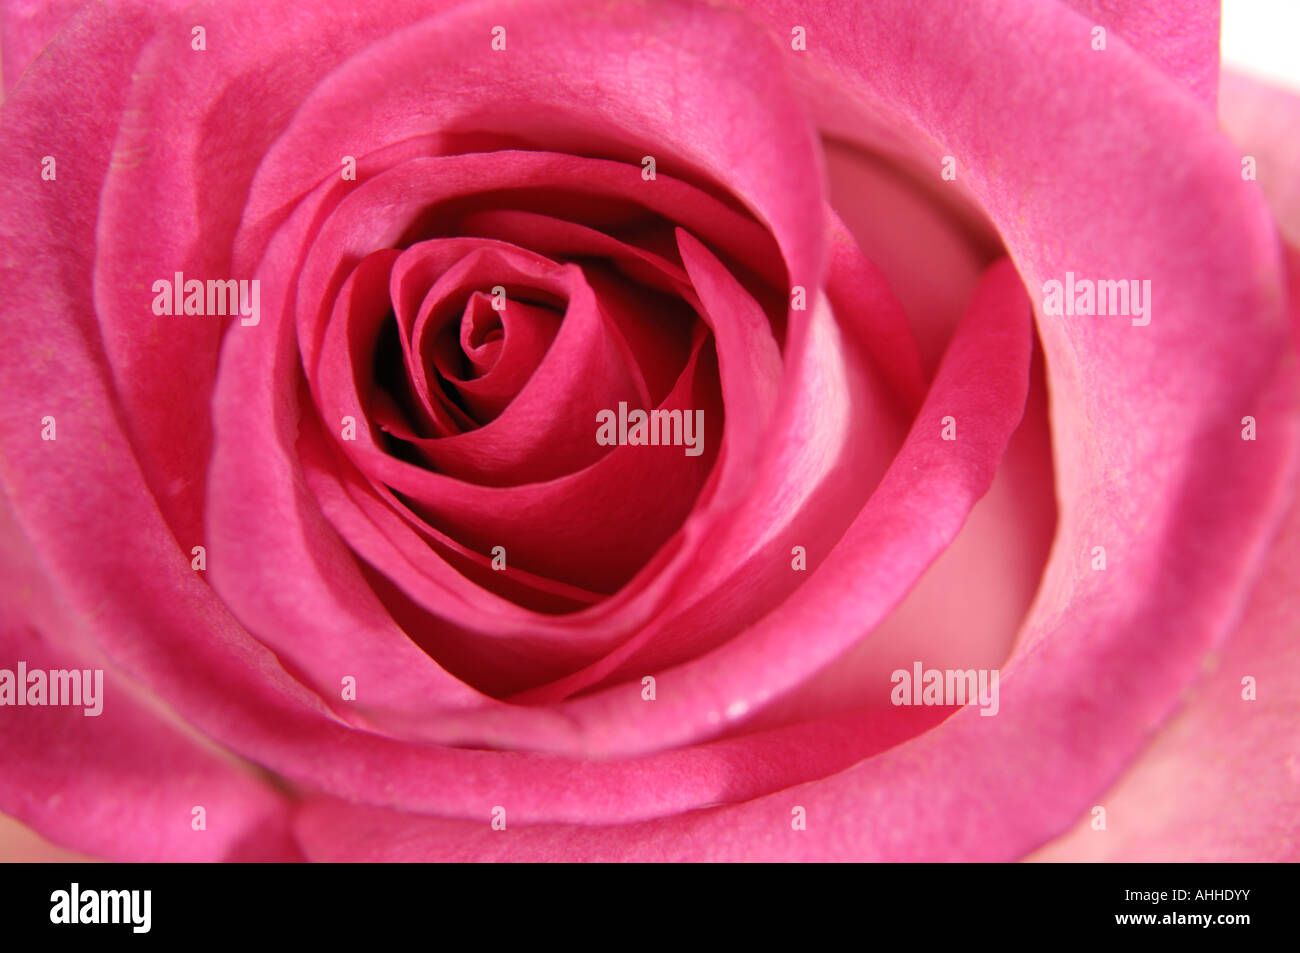 Pink rose closeup Stock Photo